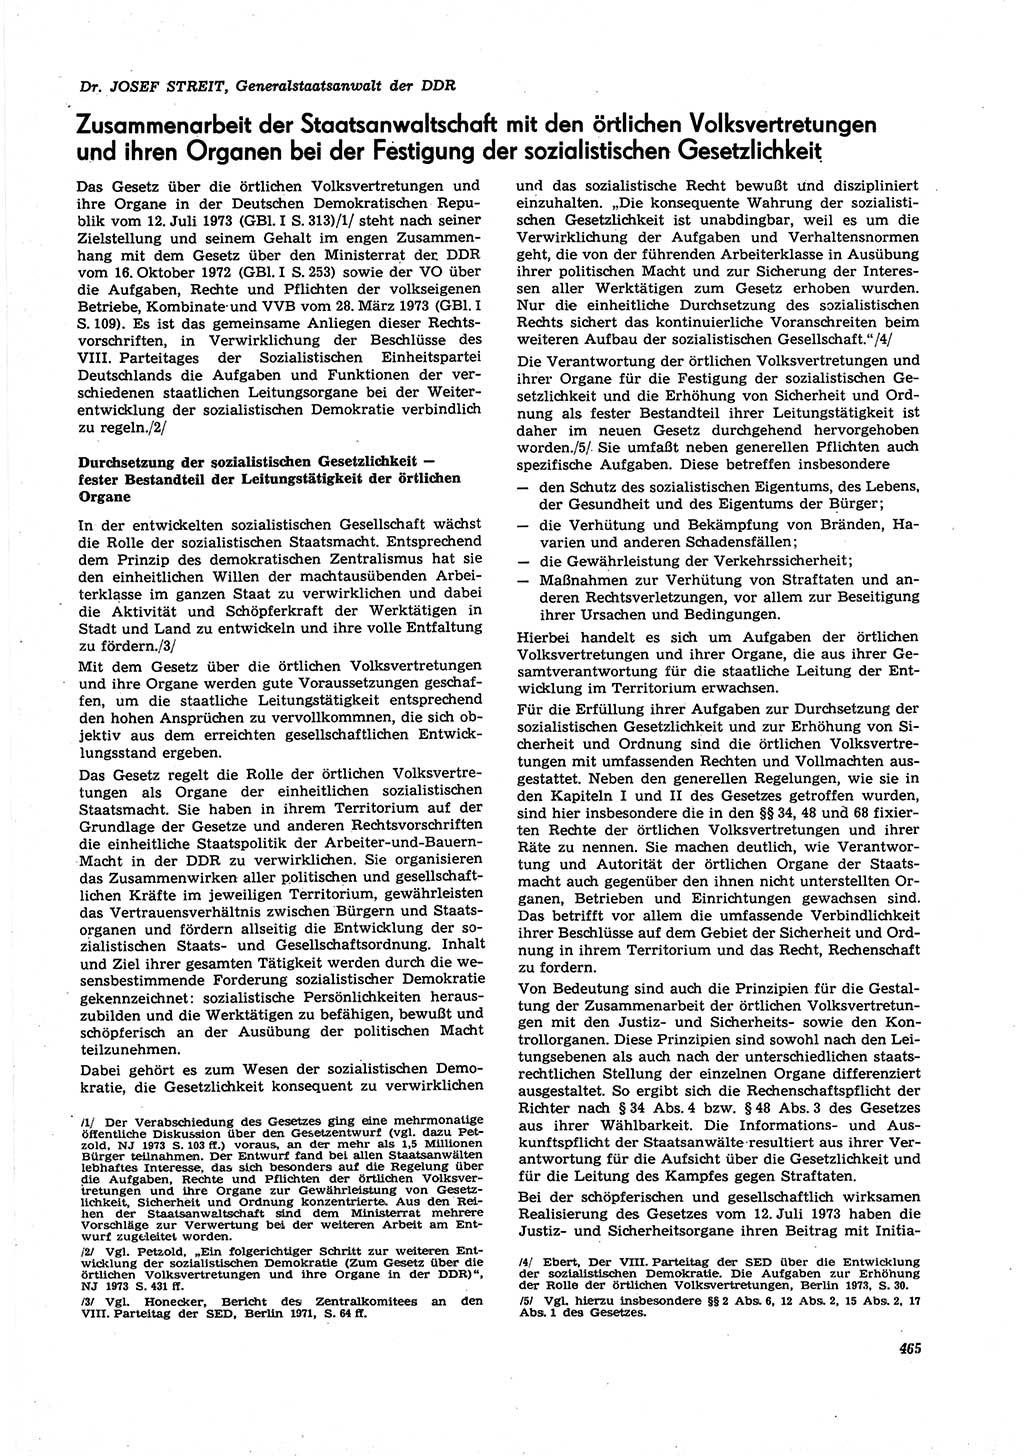 Neue Justiz (NJ), Zeitschrift für Recht und Rechtswissenschaft [Deutsche Demokratische Republik (DDR)], 27. Jahrgang 1973, Seite 465 (NJ DDR 1973, S. 465)